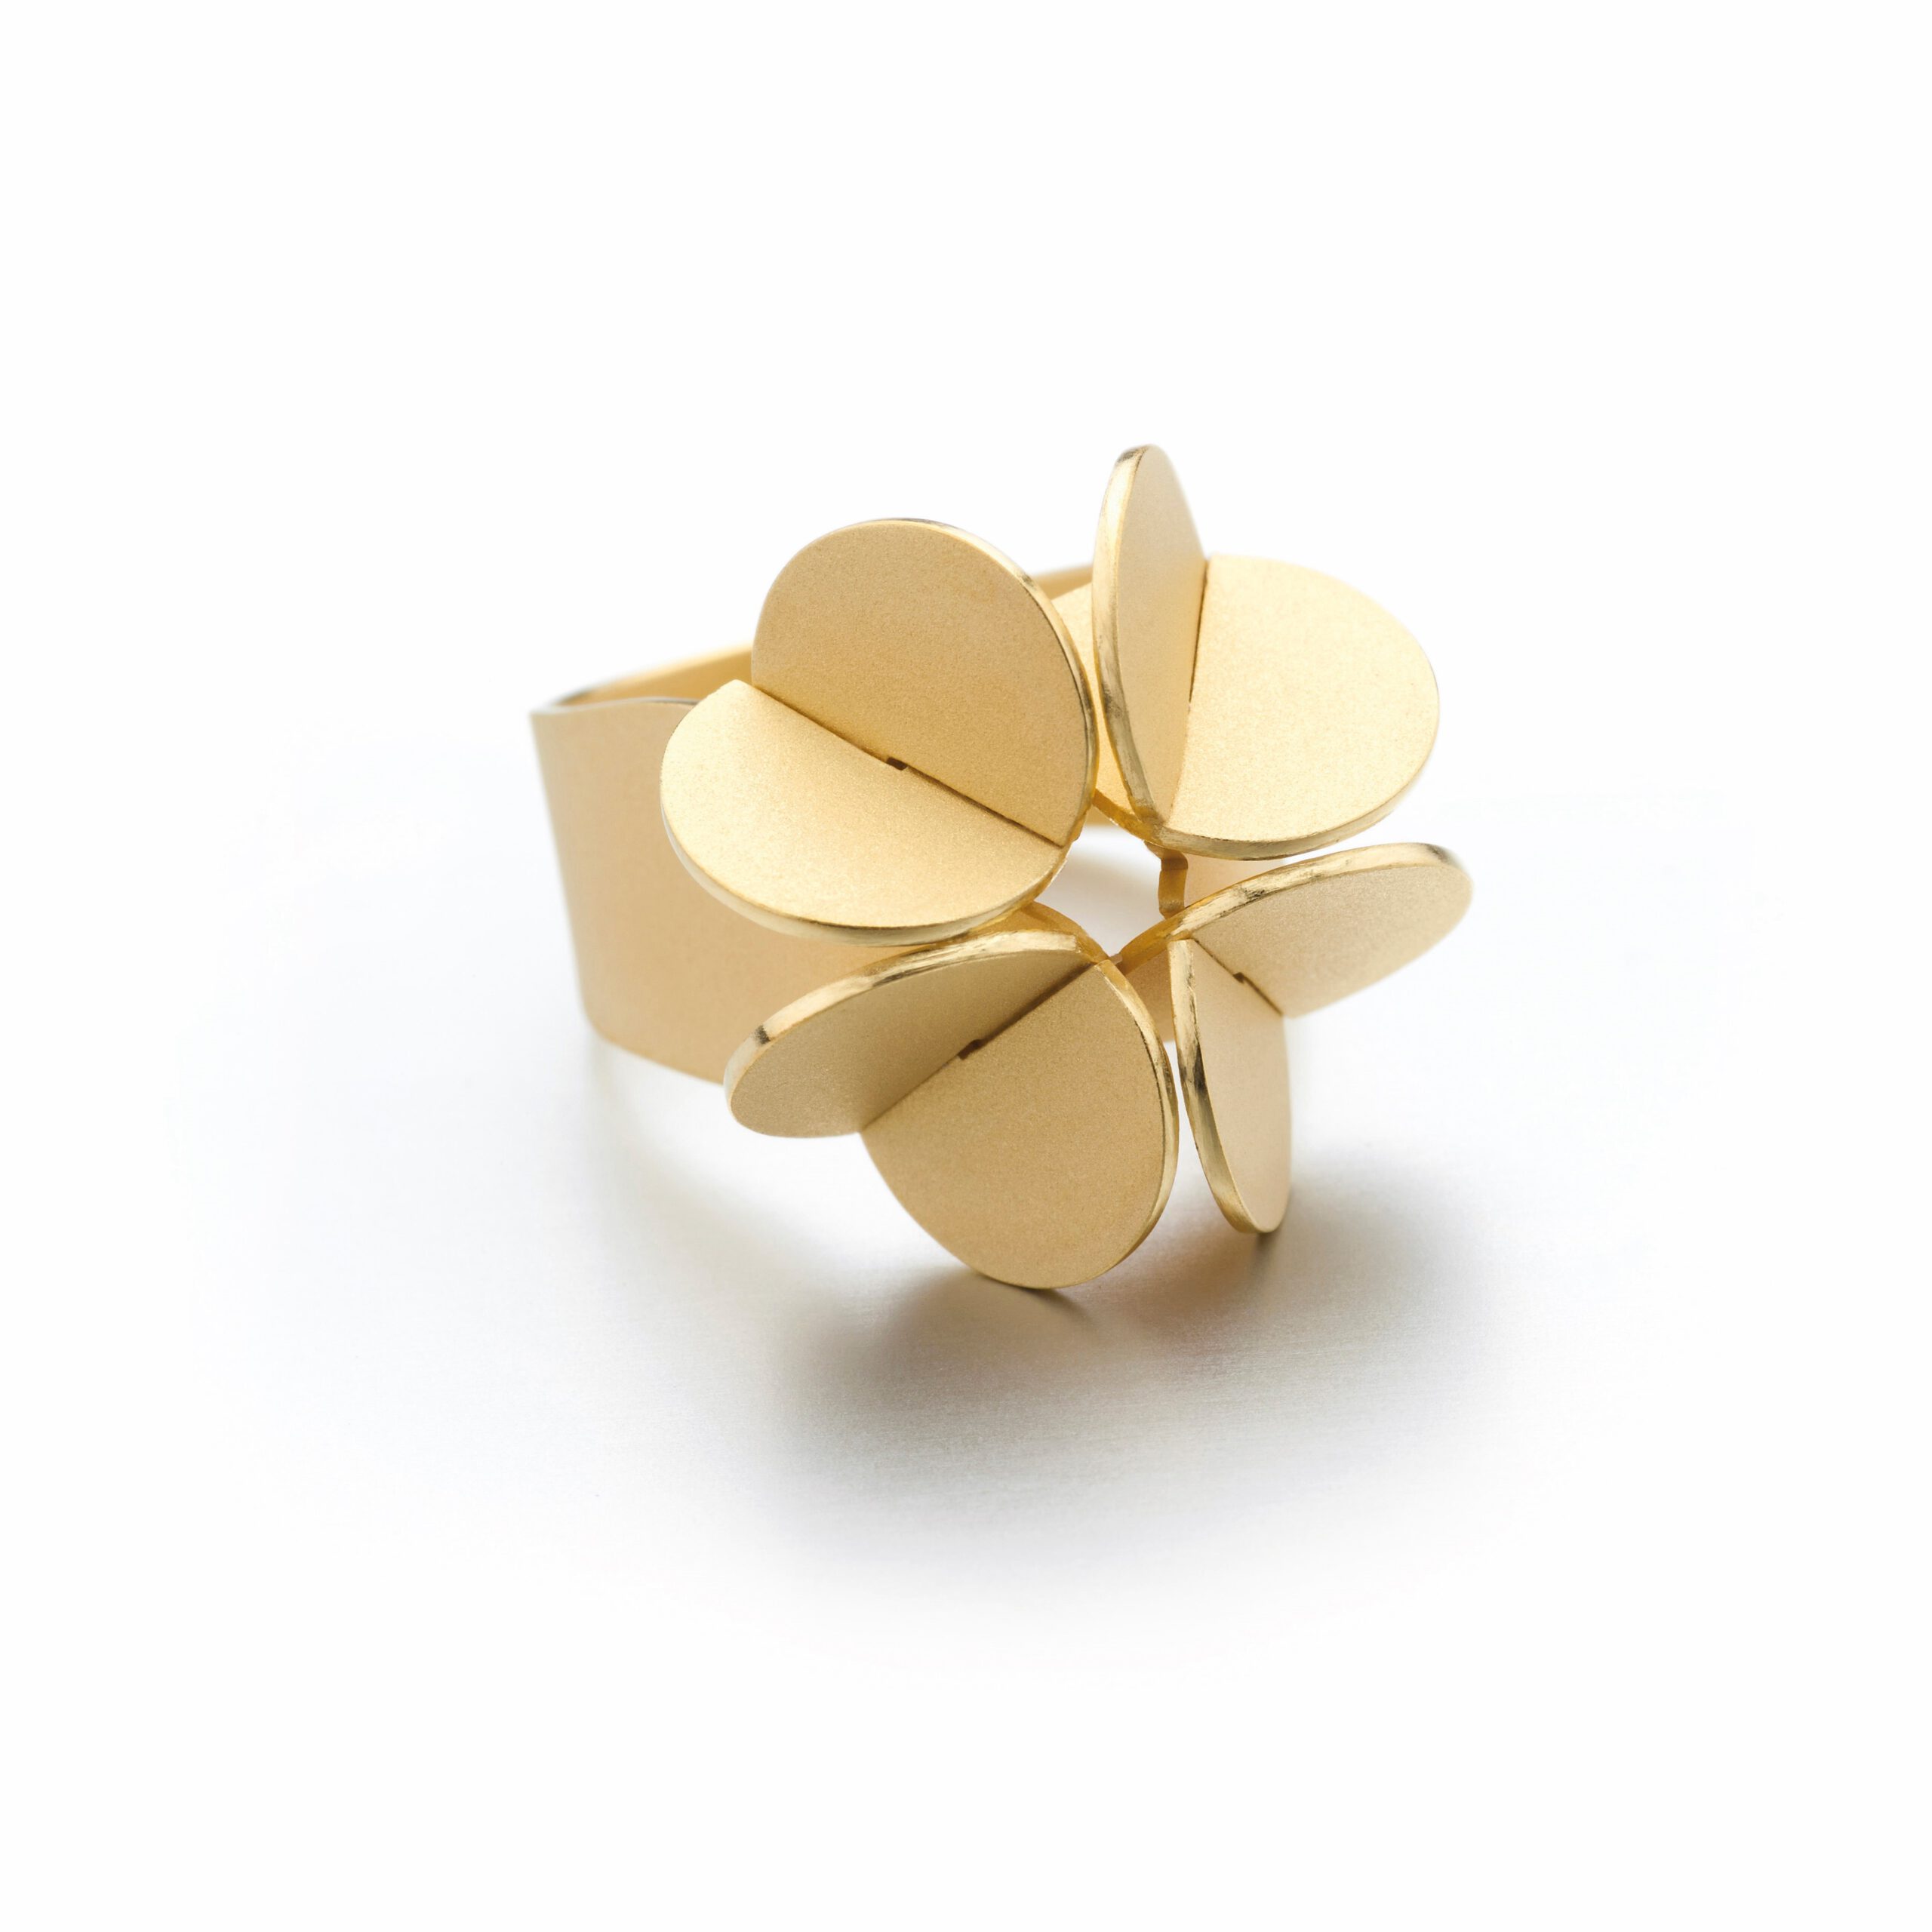 "Blatt Art" ist ein besonderer Gold-Ring aus aus der Goldschmiede Grosche, Nähe Dortmund.